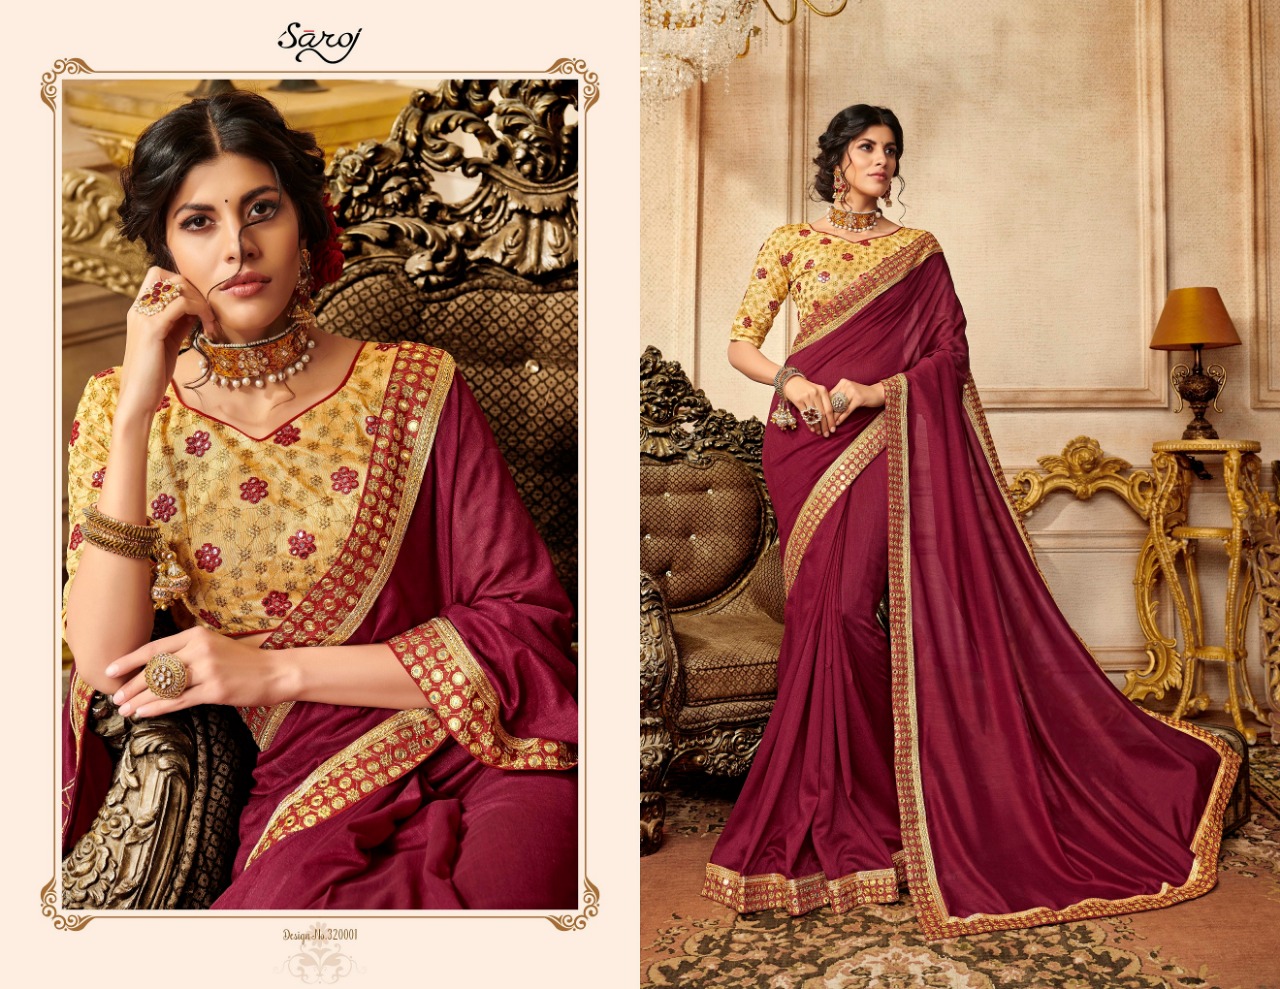 saroj sanskar beautiful designer sarees collection